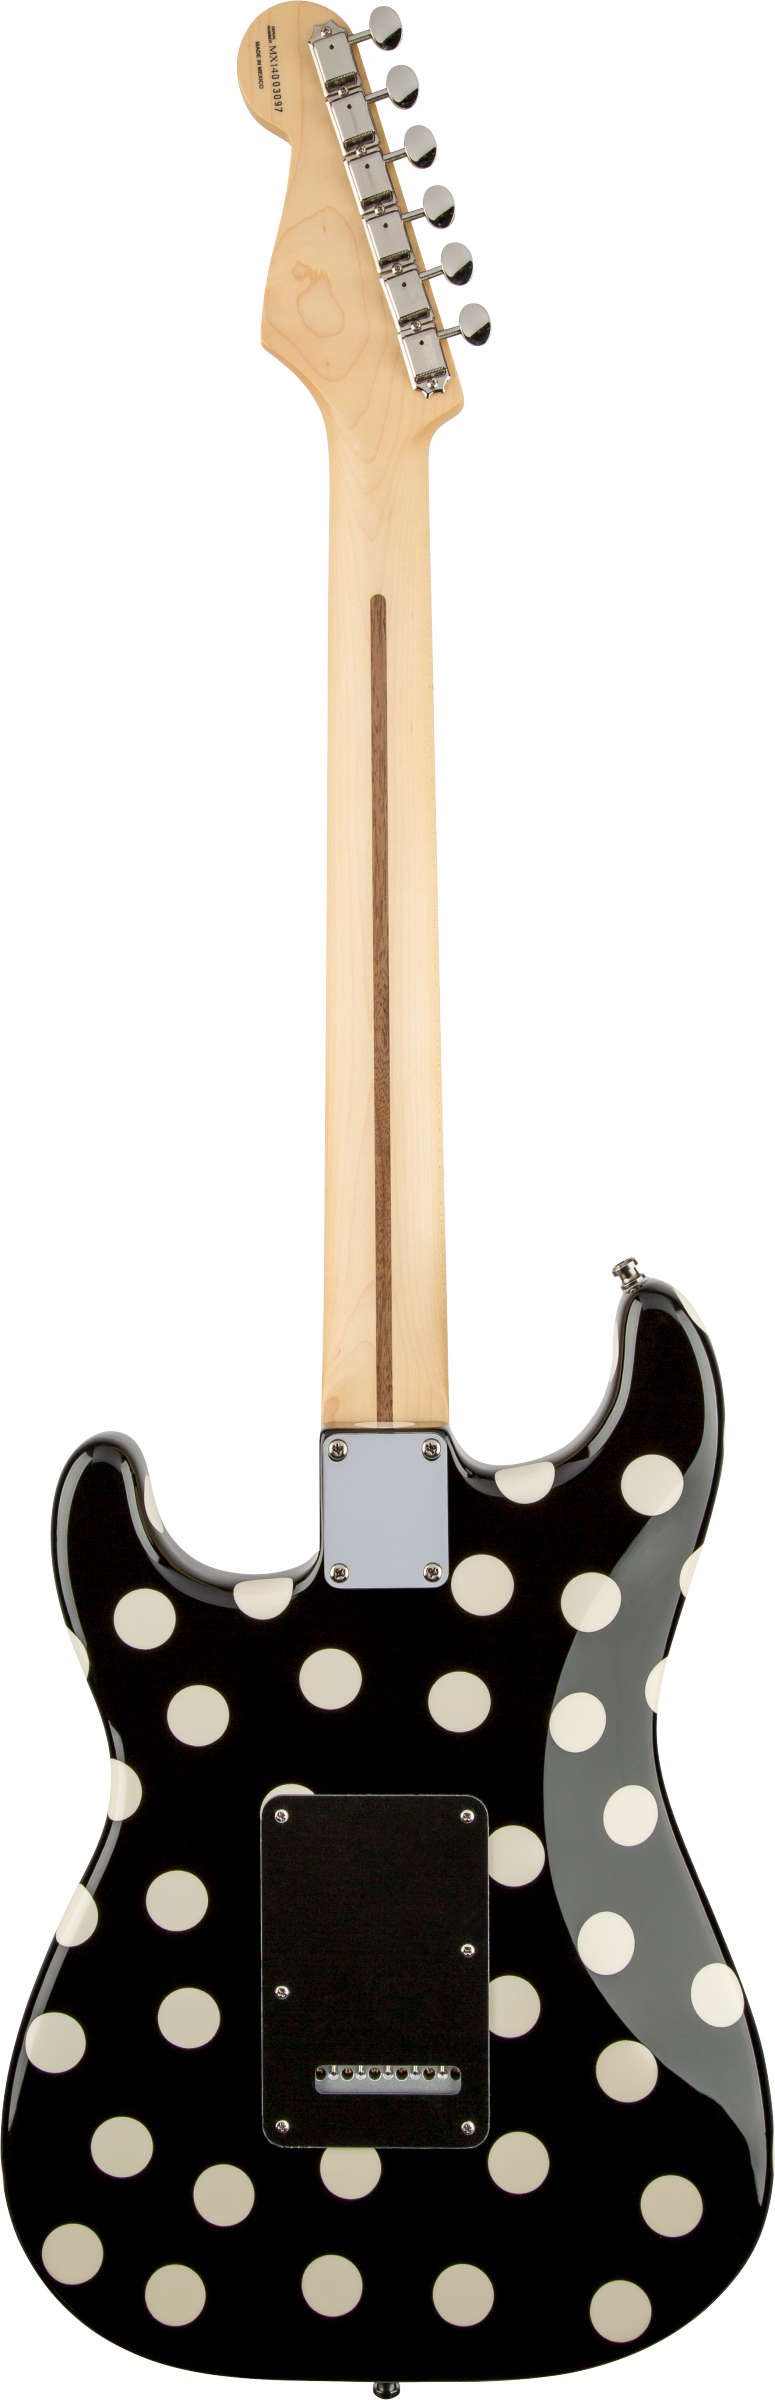 Back of Fender Buddy Guy Standard Stratocaster Maple Fingerboard Polka Dot Finish.